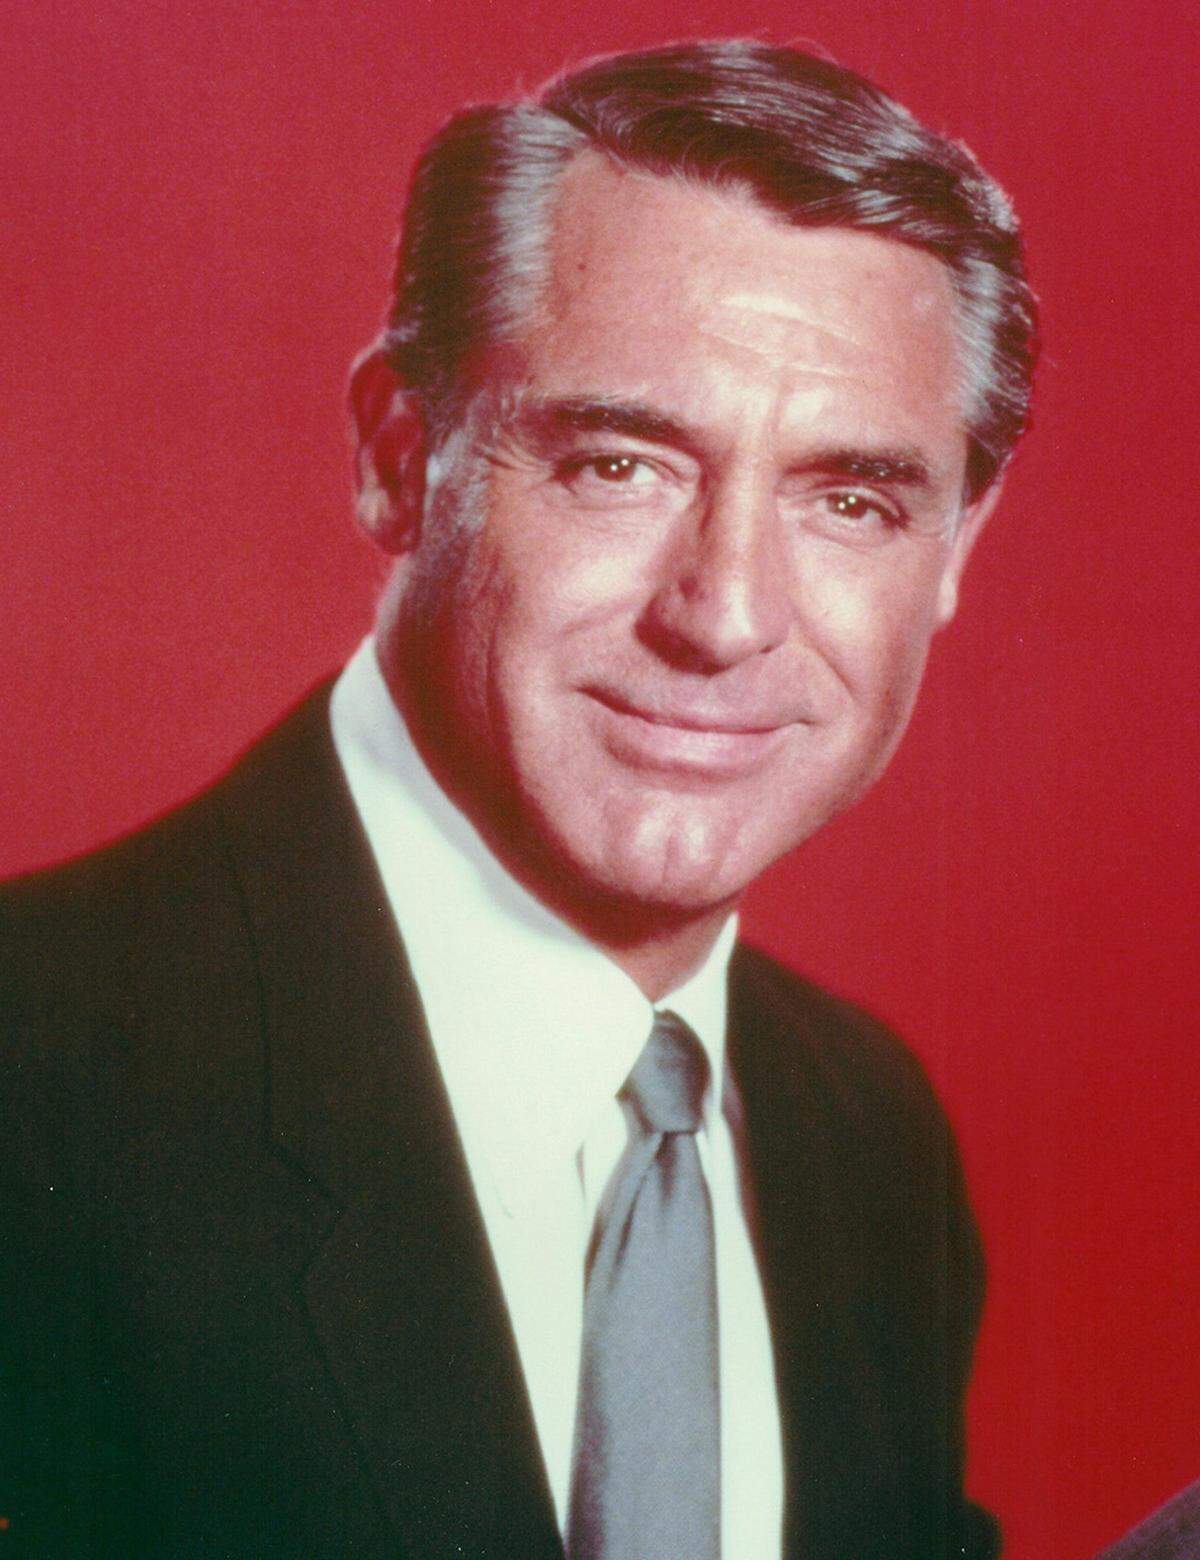 Ein charmantes Lächeln hatte Cary Grant immer auf den Lippen und verkörperte damit Frauenheld und Gentleman gleichermaßen.